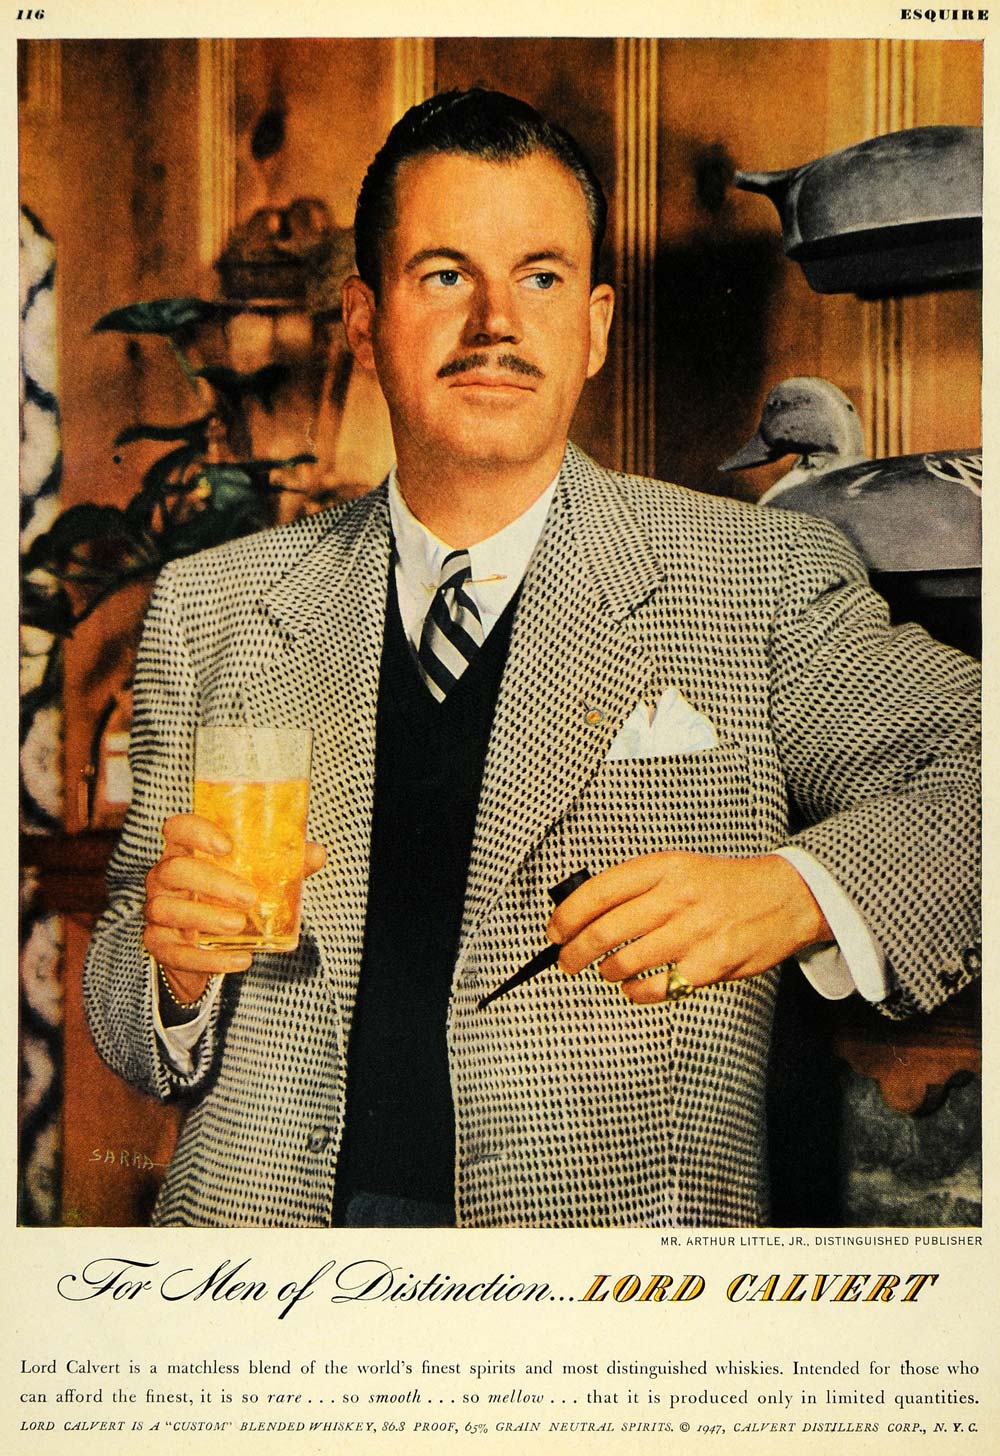 1947 Ad Lord Calvert Portrait Drink Beverage Whiskey Distilleries Arthur ESQ4